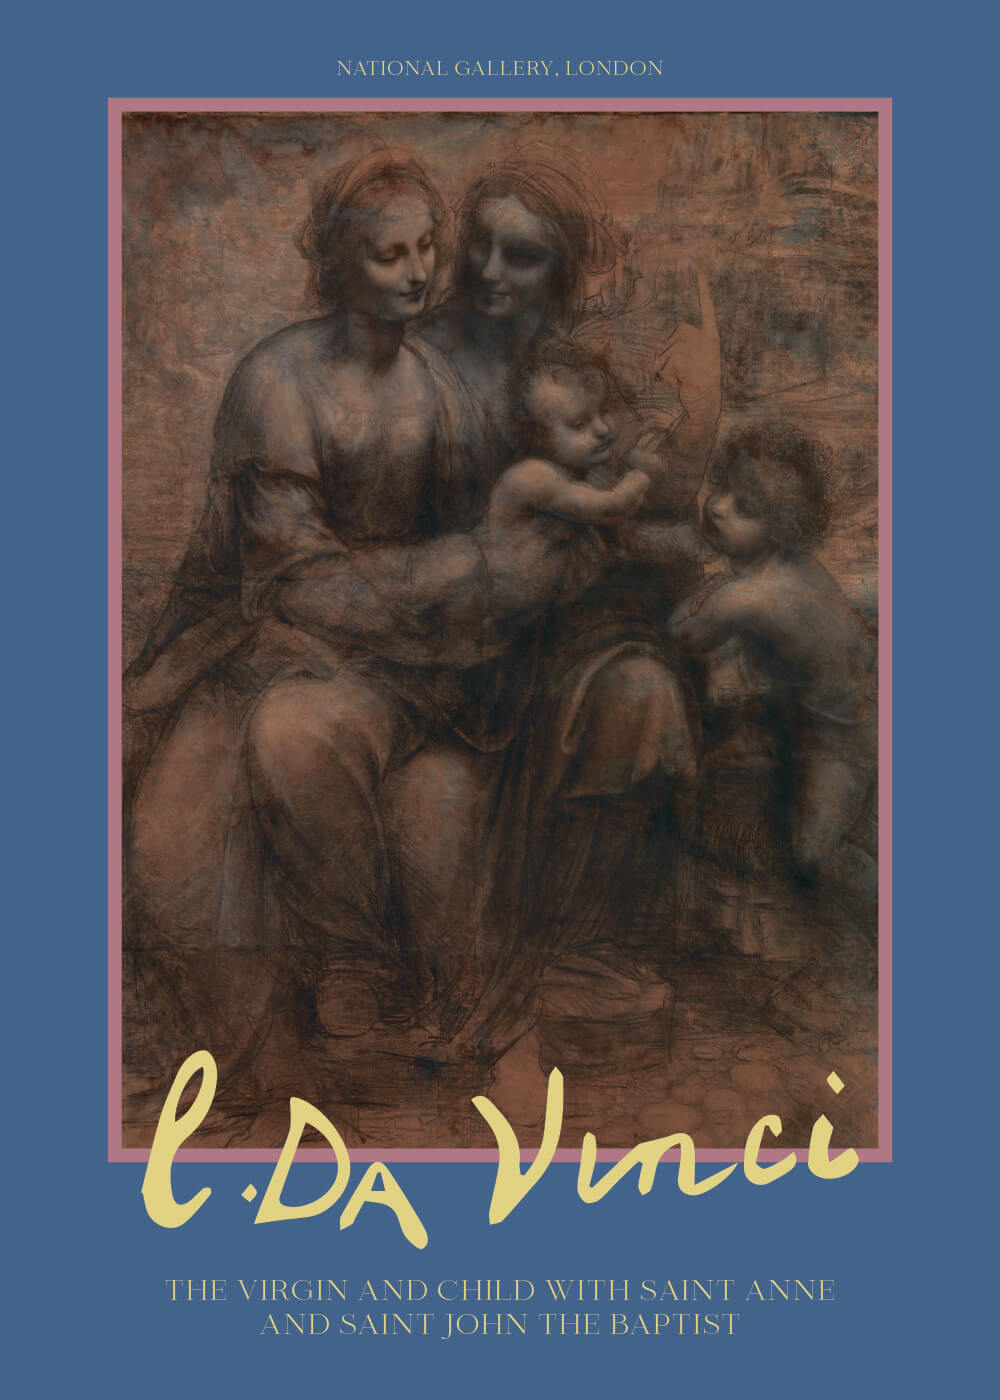 Billede af The virgin and child with Saint Anne and Saint John - Leonardo da Vinci kunstplakat